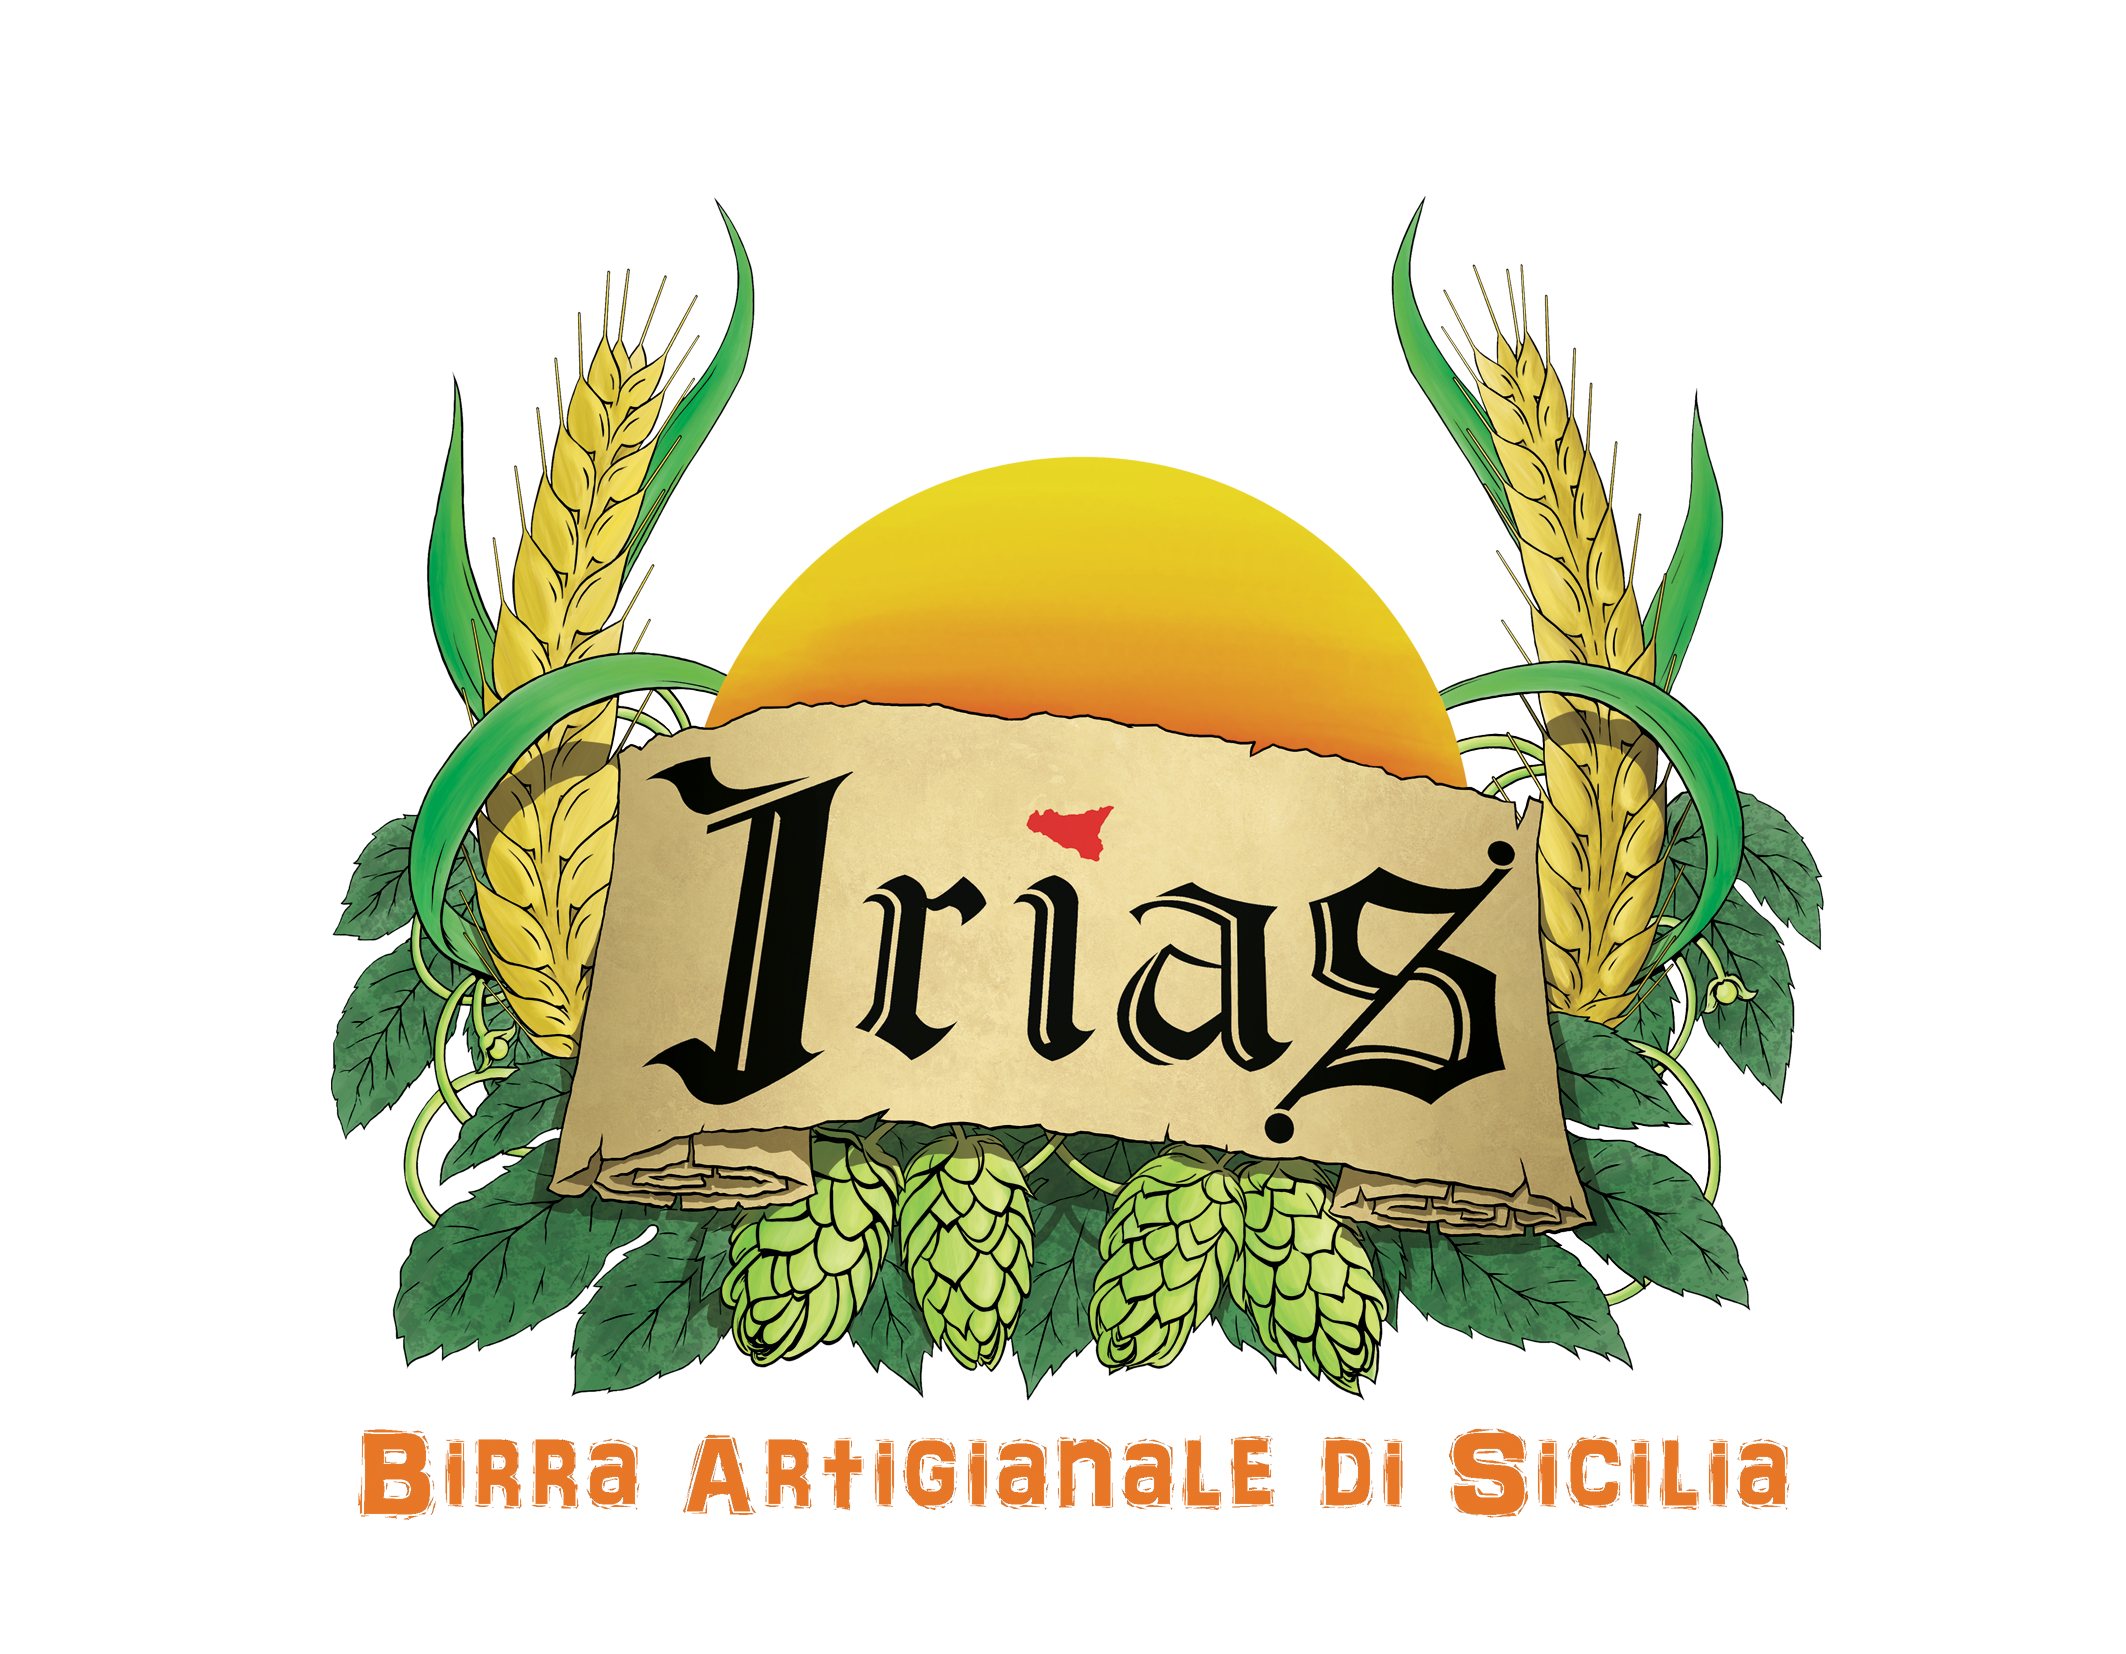 Irias - Birrificio artigianale siciliano